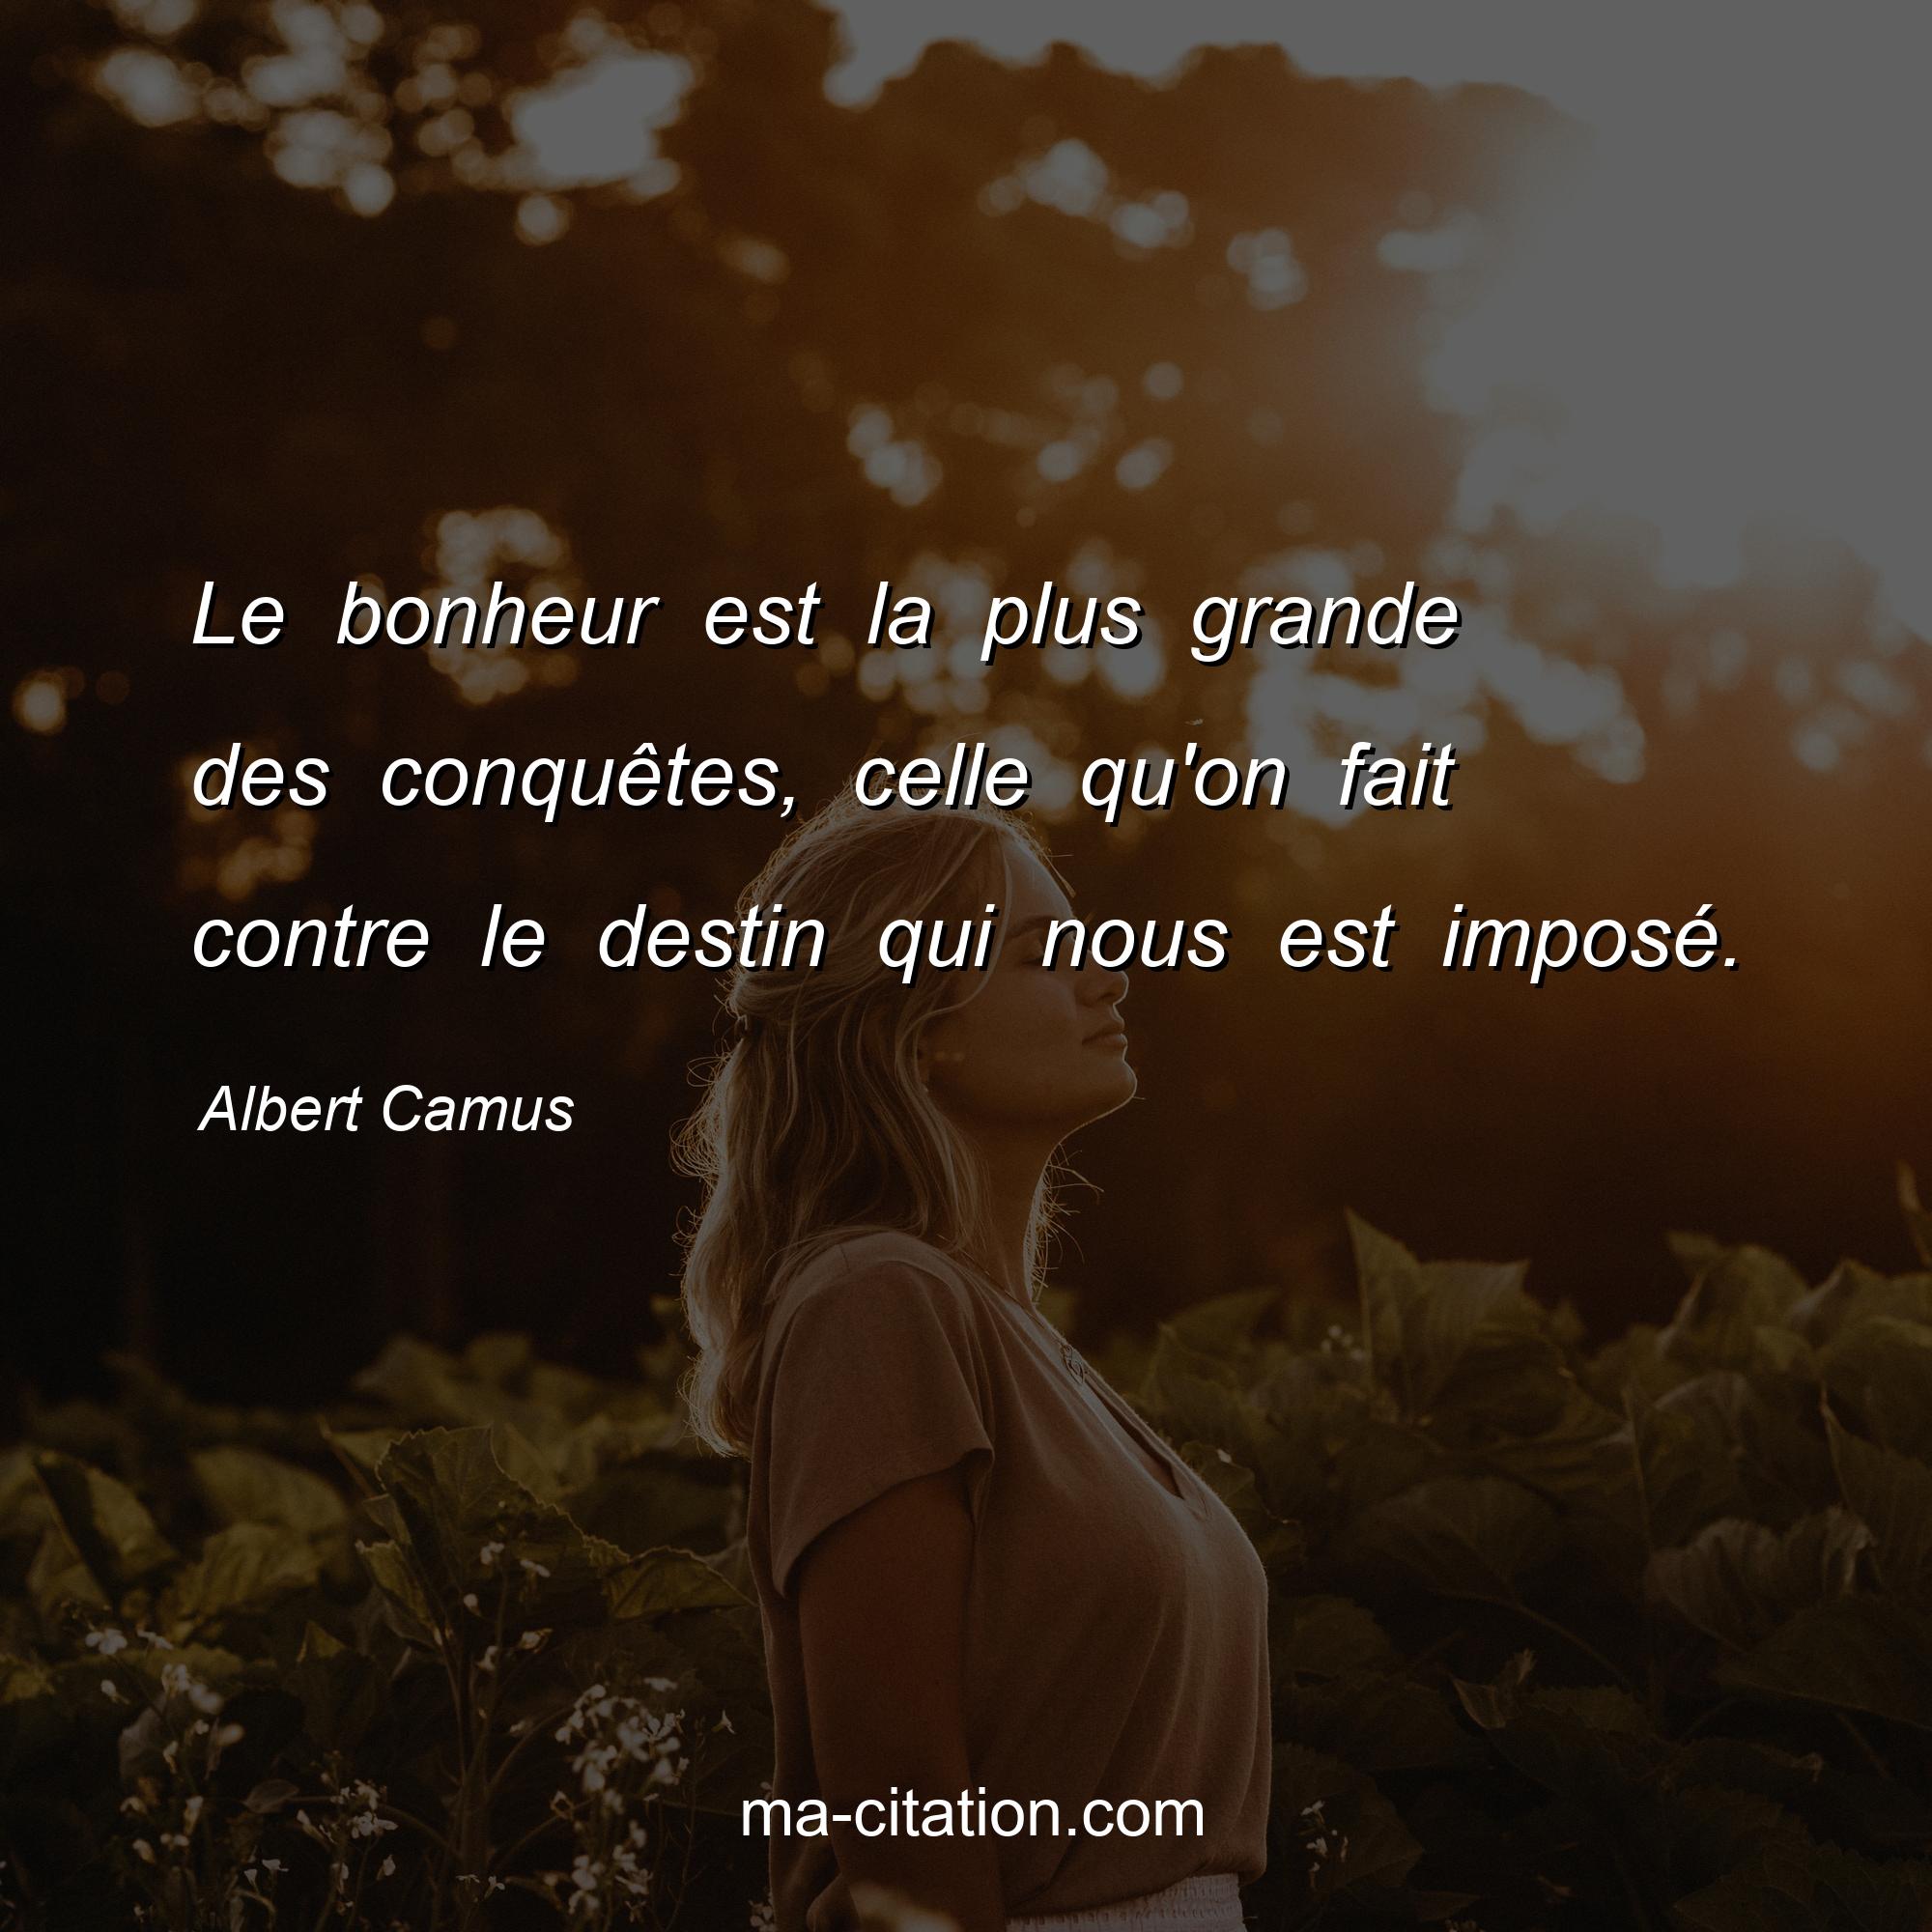 Albert Camus : Le bonheur est la plus grande des conquêtes, celle qu'on fait contre le destin qui nous est imposé.